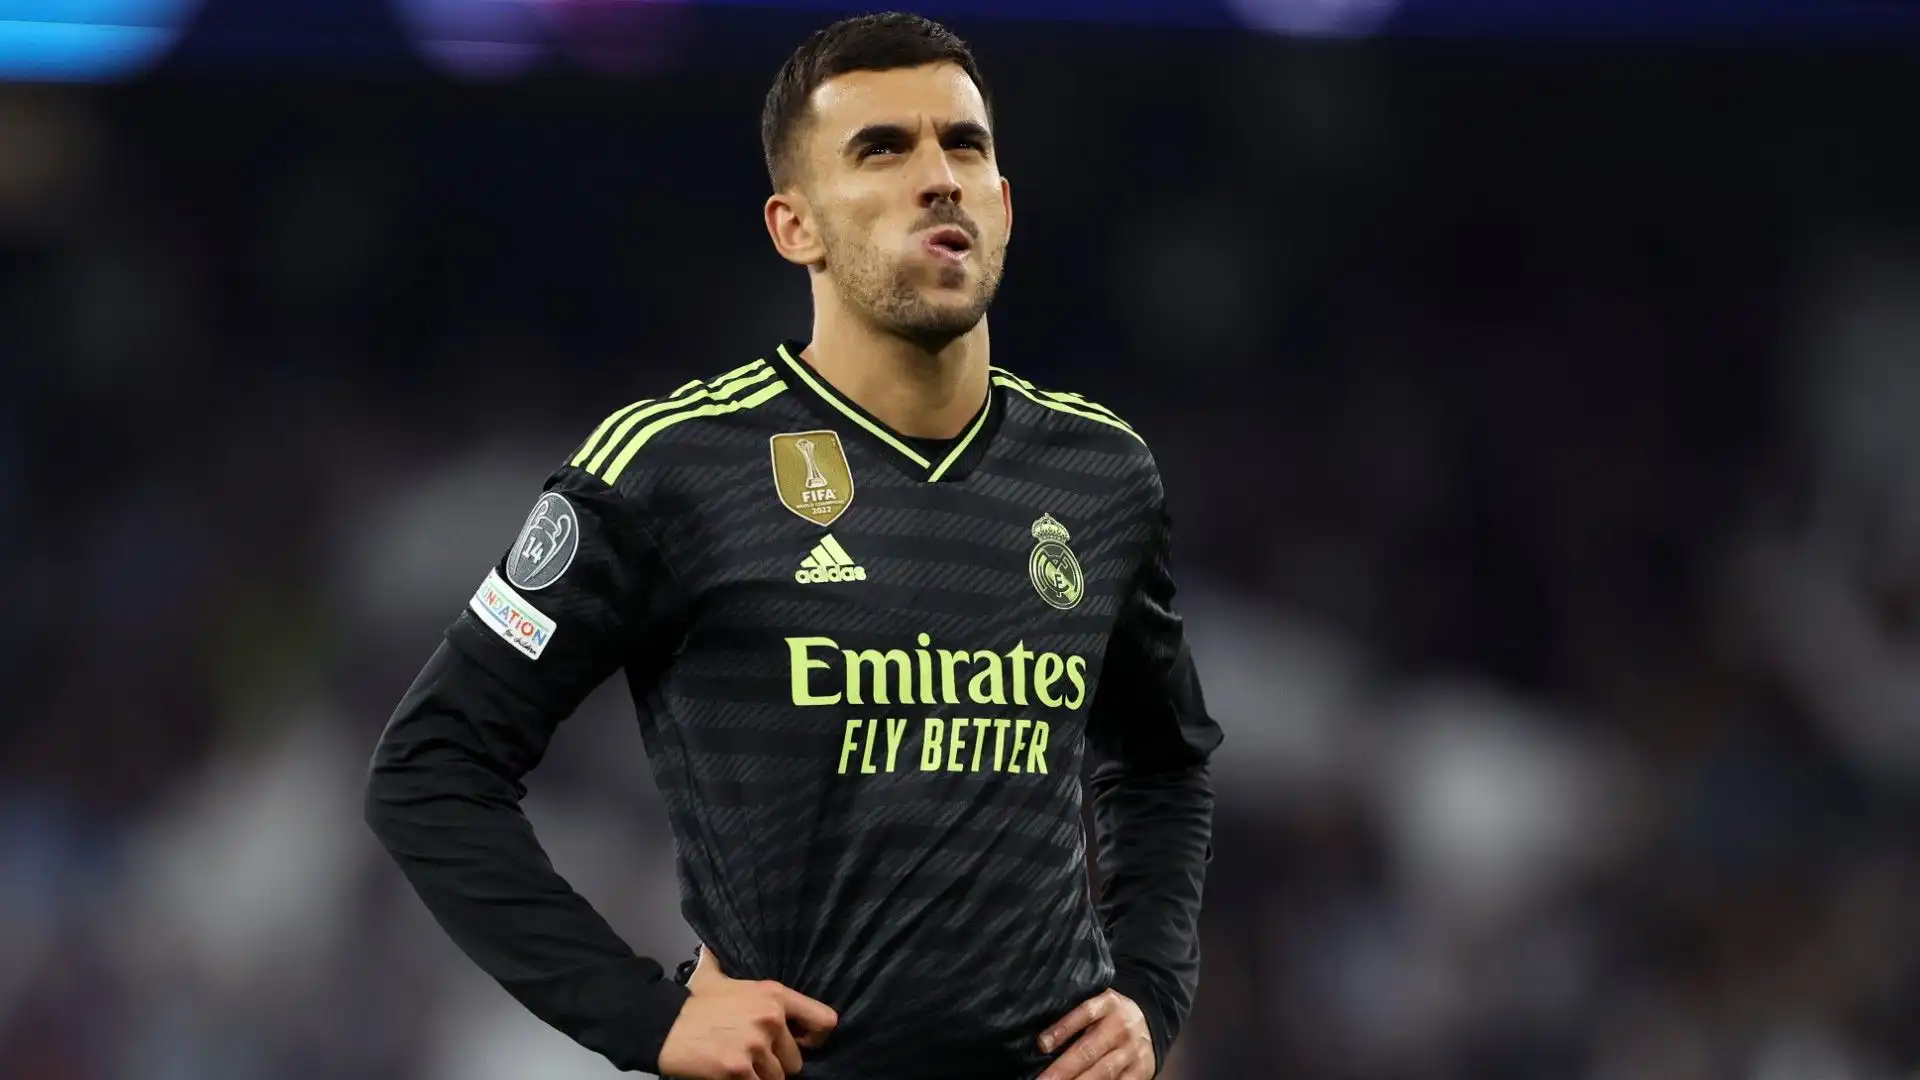 Il Real Madrid ha proposto il rinnovo di contratto al calciatore che però sta valutando anche altre opzioni